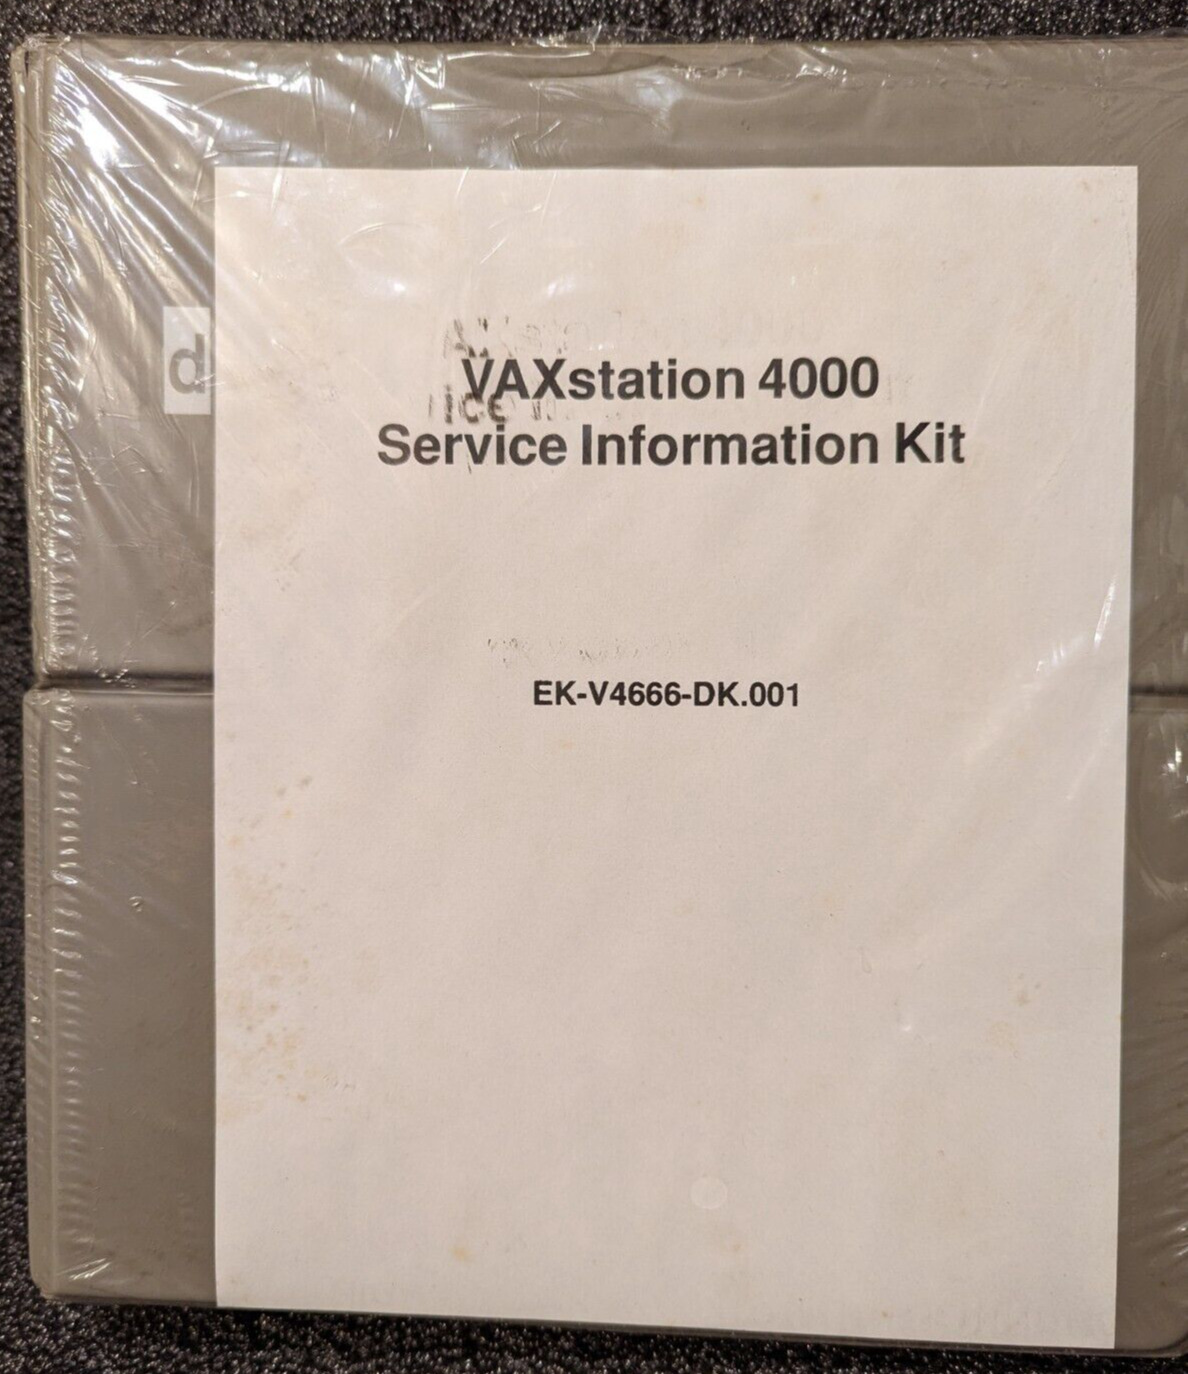 Vintage DEC VAXstation 4000 Service Information Kit - still sealed